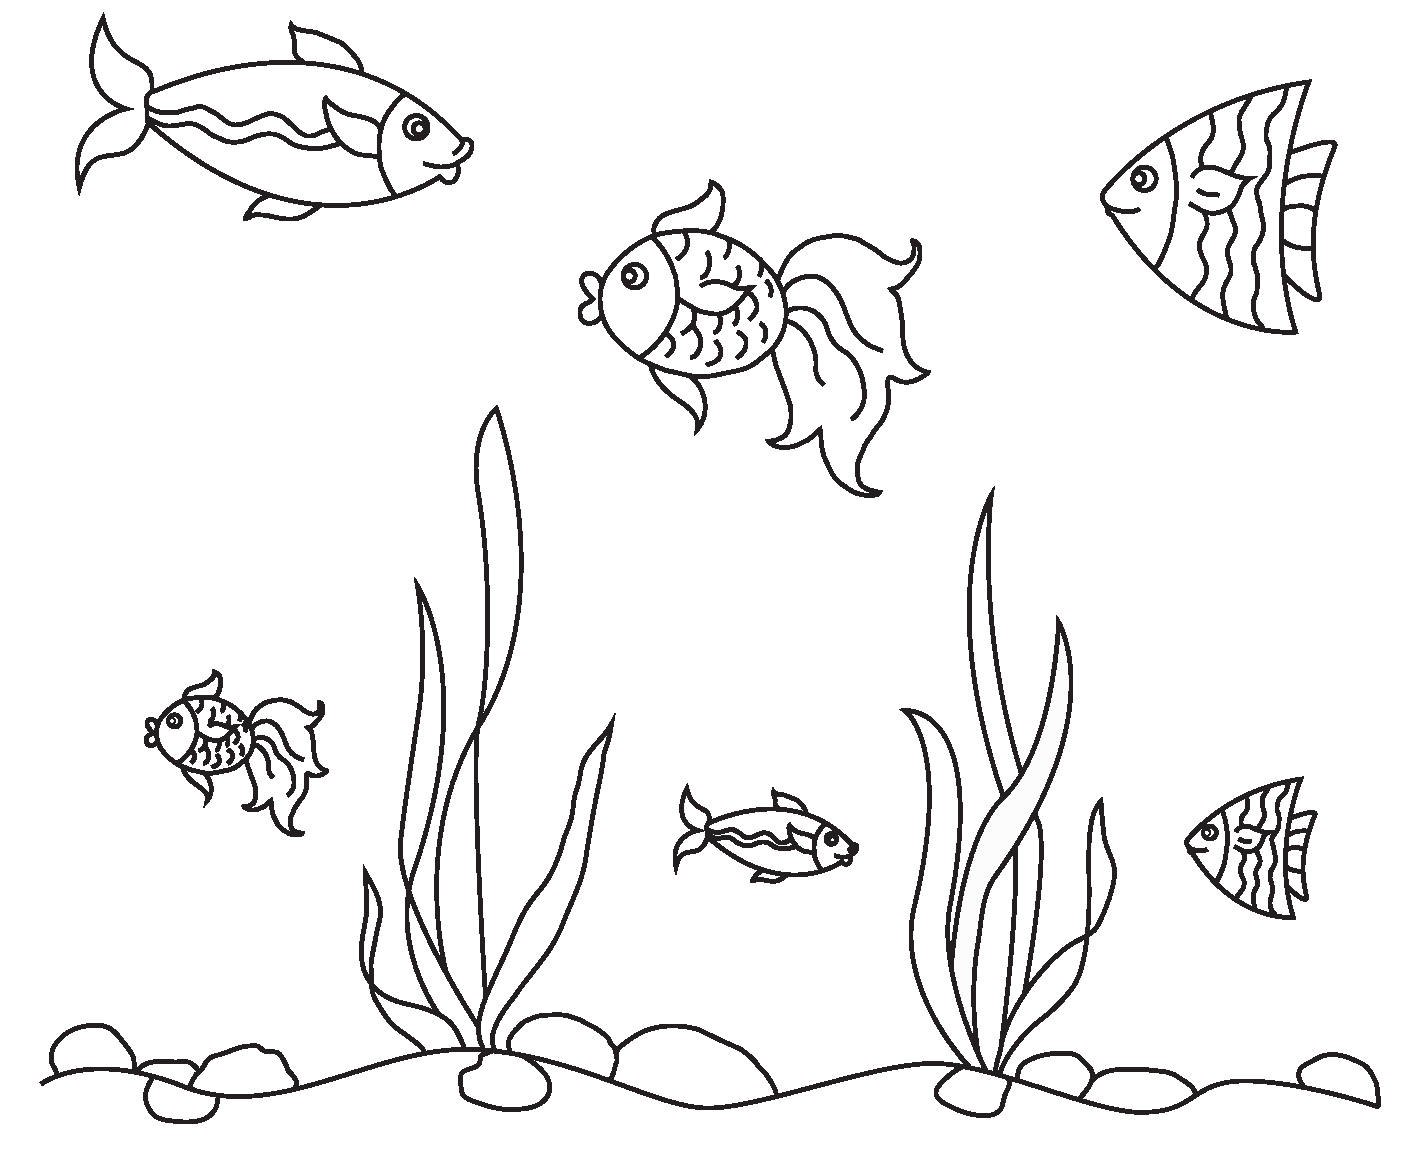 Тема аквариумные рыбки средняя группа. Раскраска аквариум с рыбками. Аквариумные рыбки раскраска. Раскраска аквариум с рыбками для детей. Аквариумные рыбки задания для дошкольников.